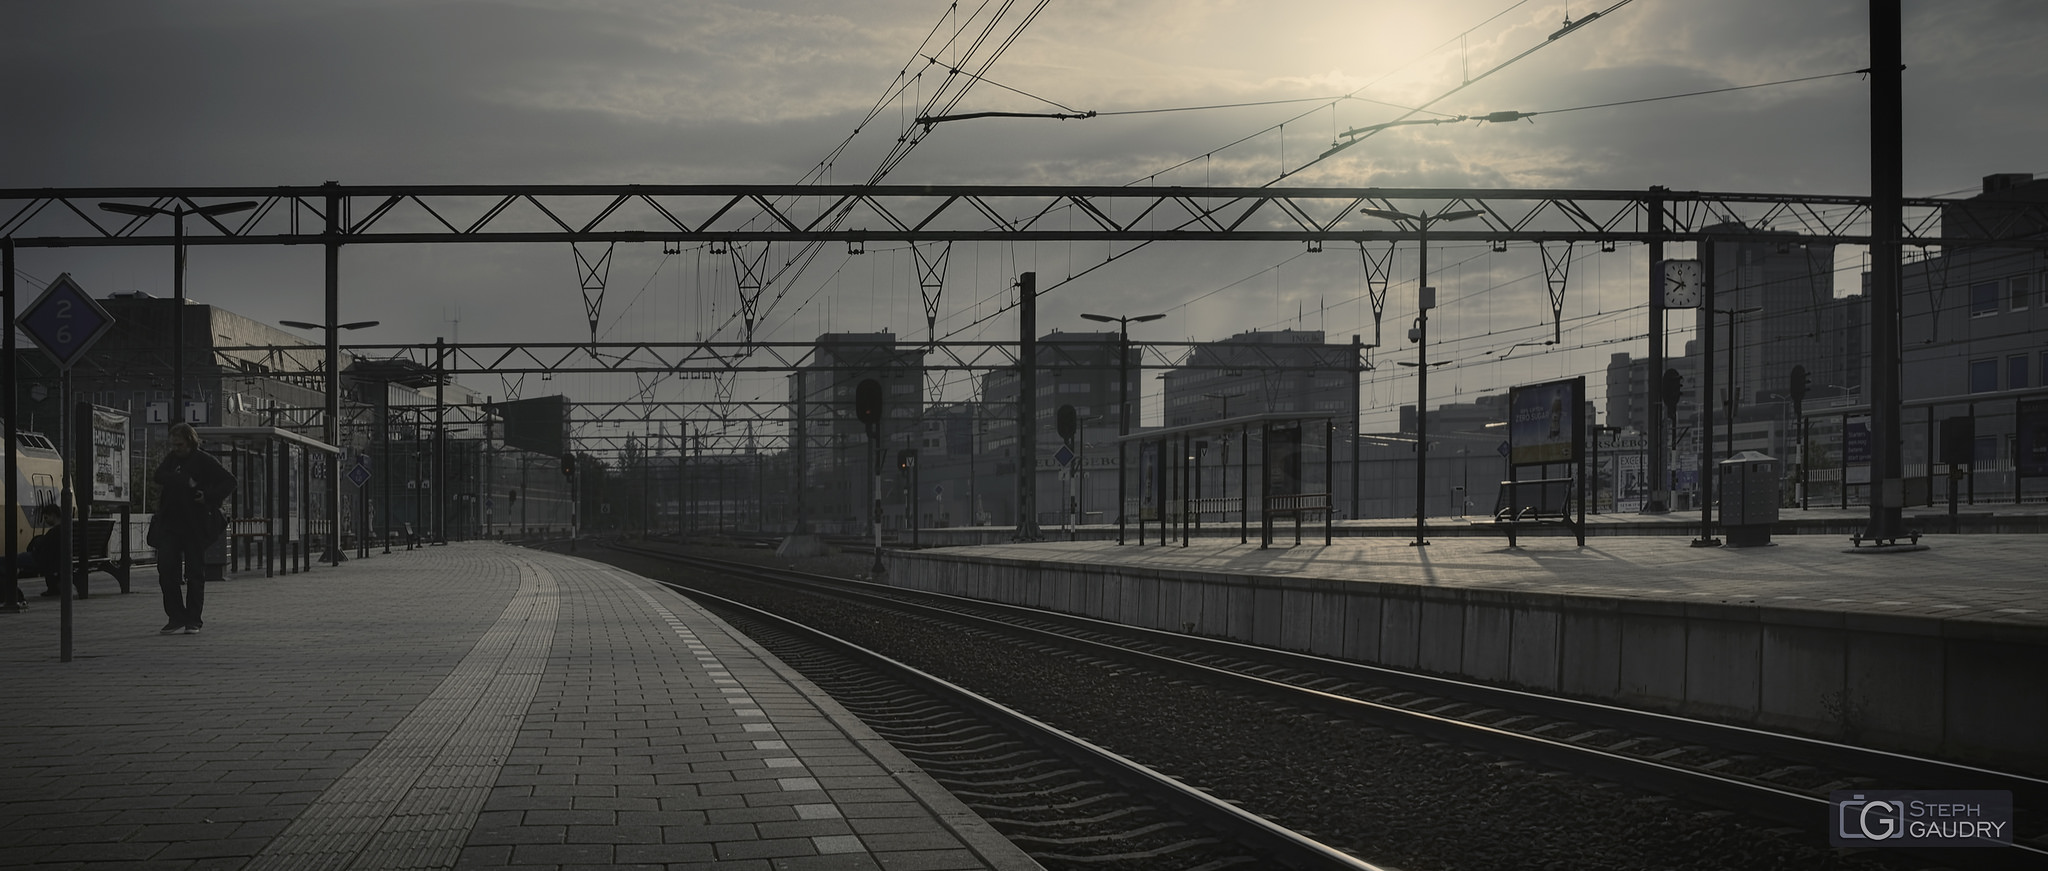 Eindhoven, les quais de la gare